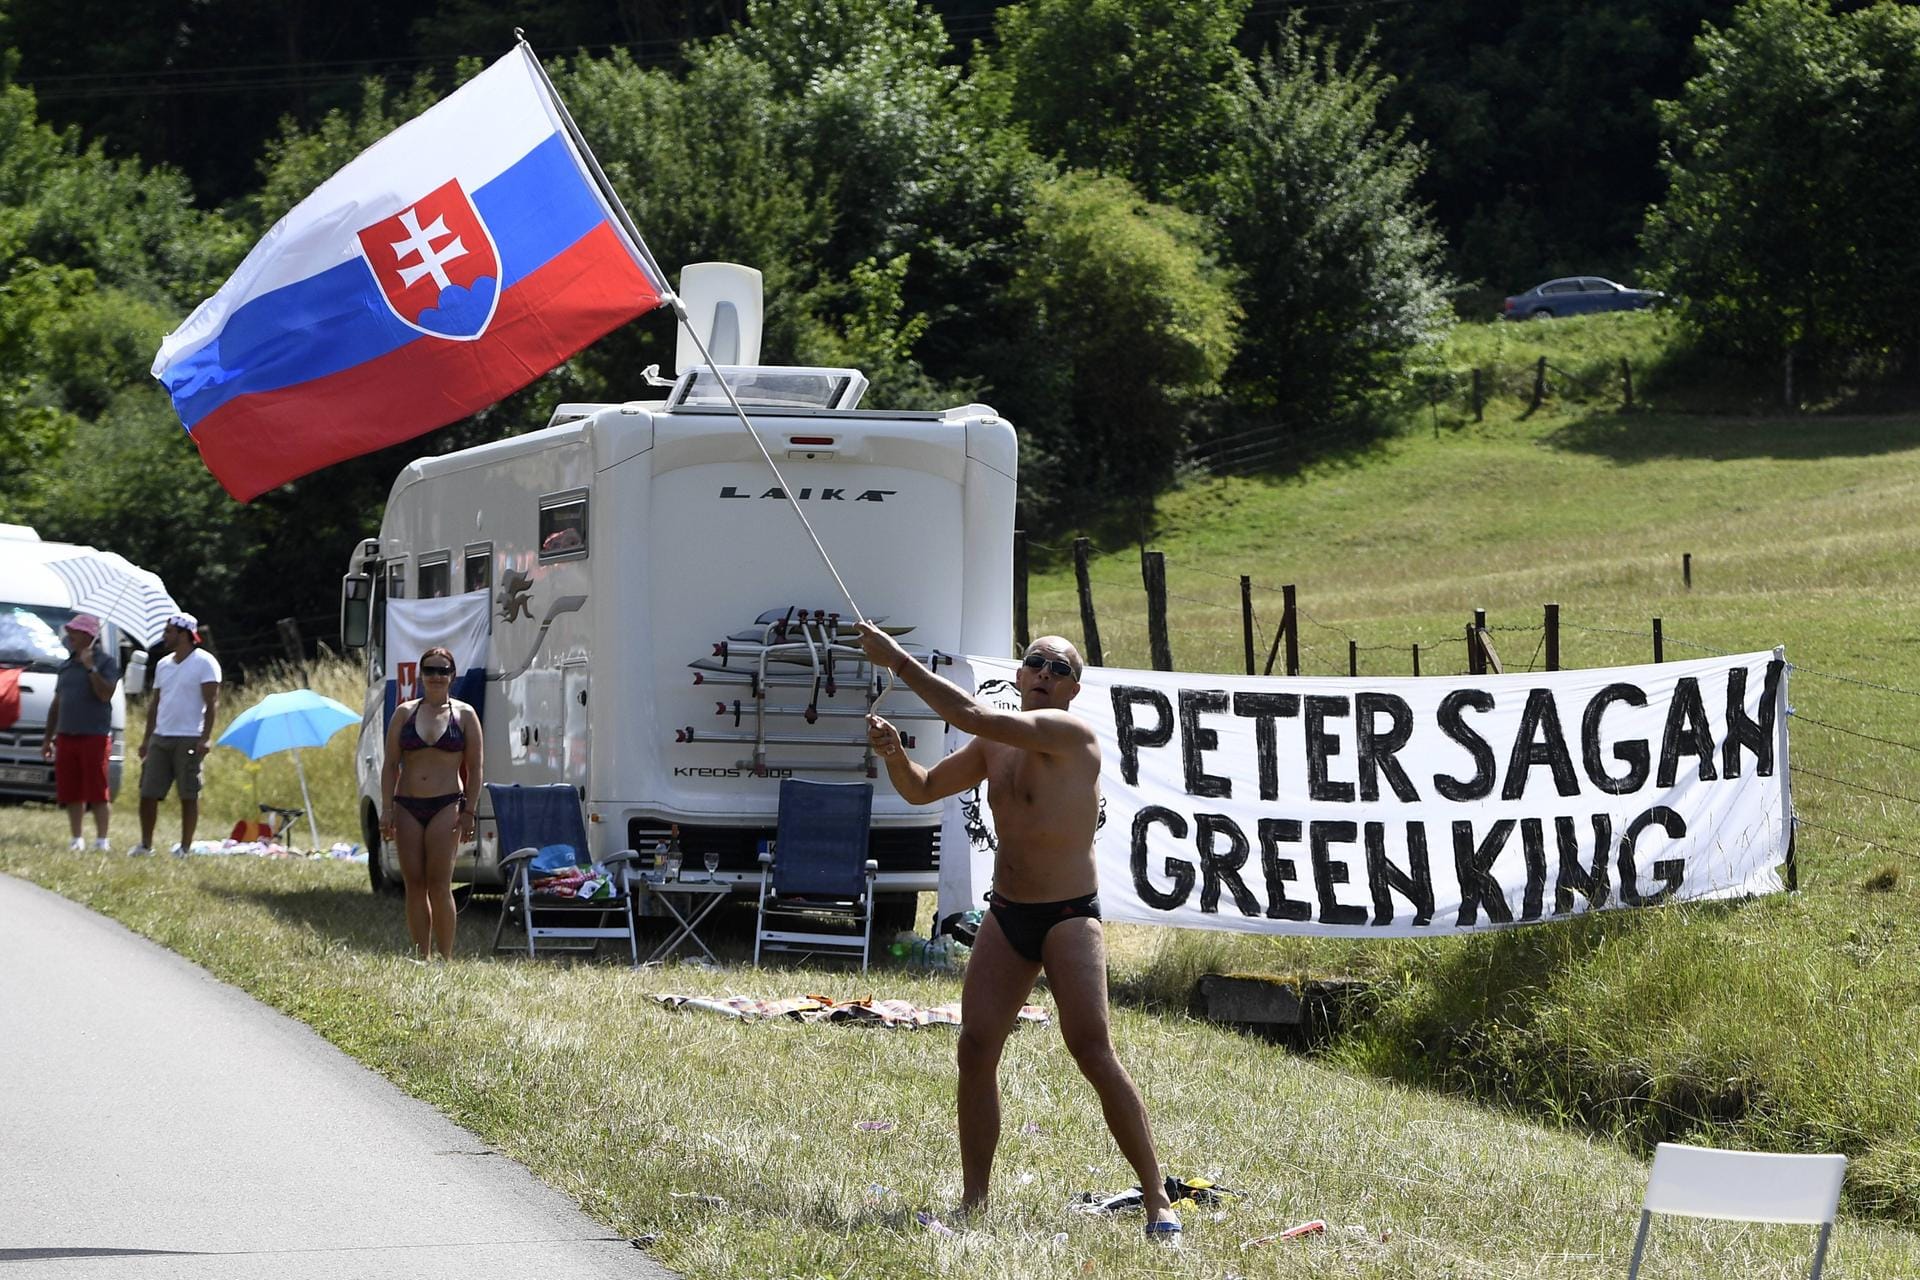 Slowakische Fans feiern Weltmeister Peter Sagan als "Green King" ("Grünen König").